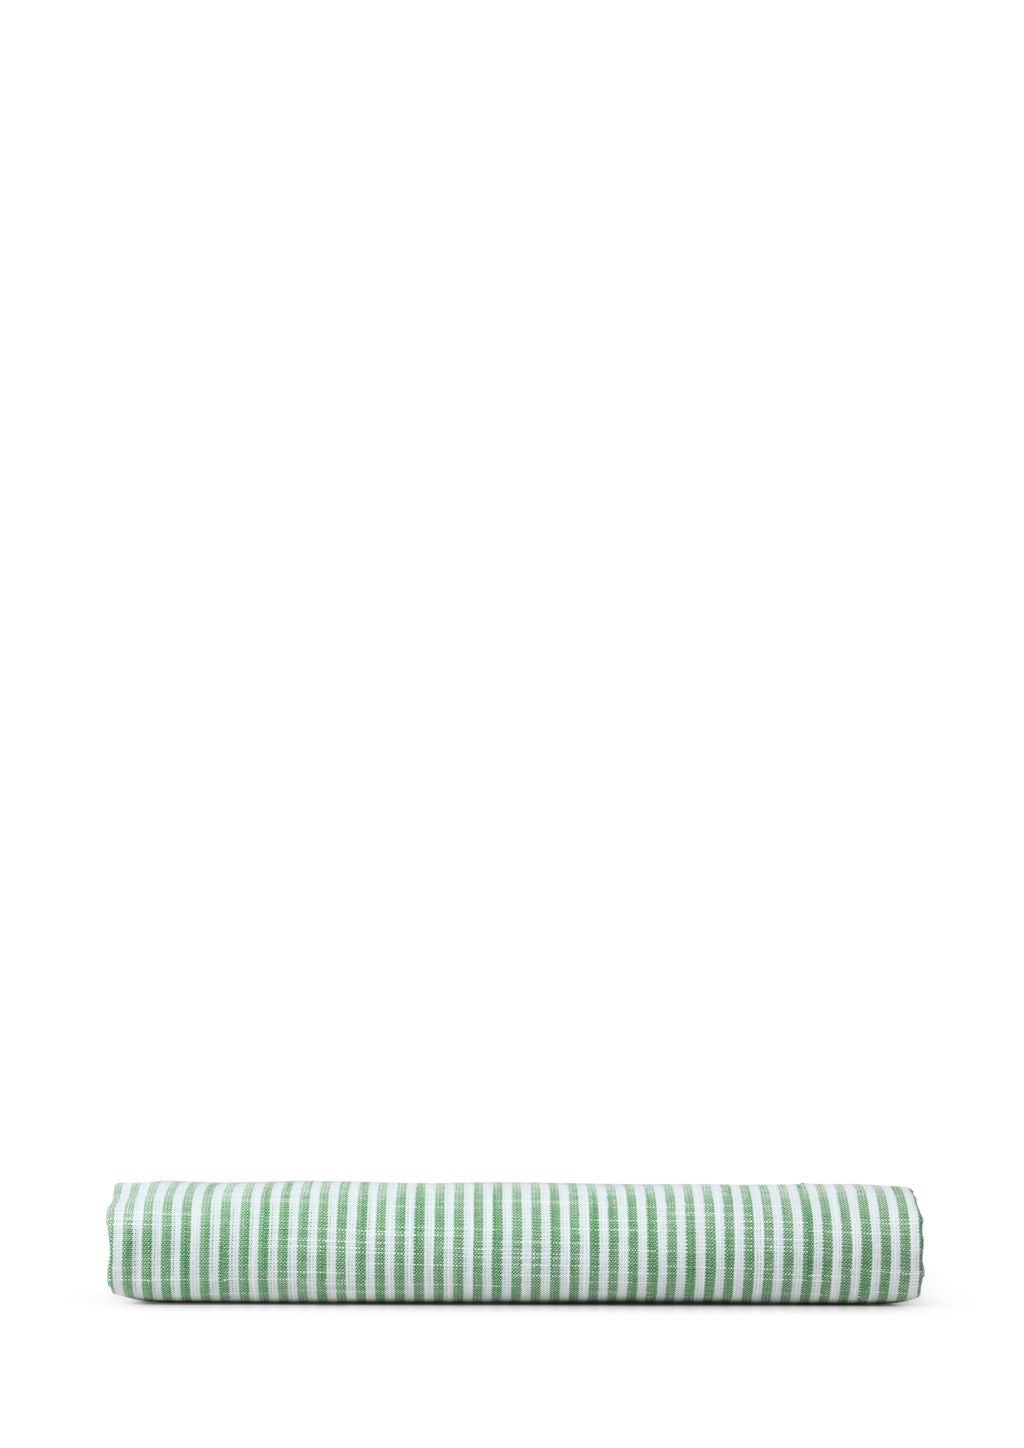 JUNA Couvre-coussin monochrome 63 x60 cm, vert / blanc